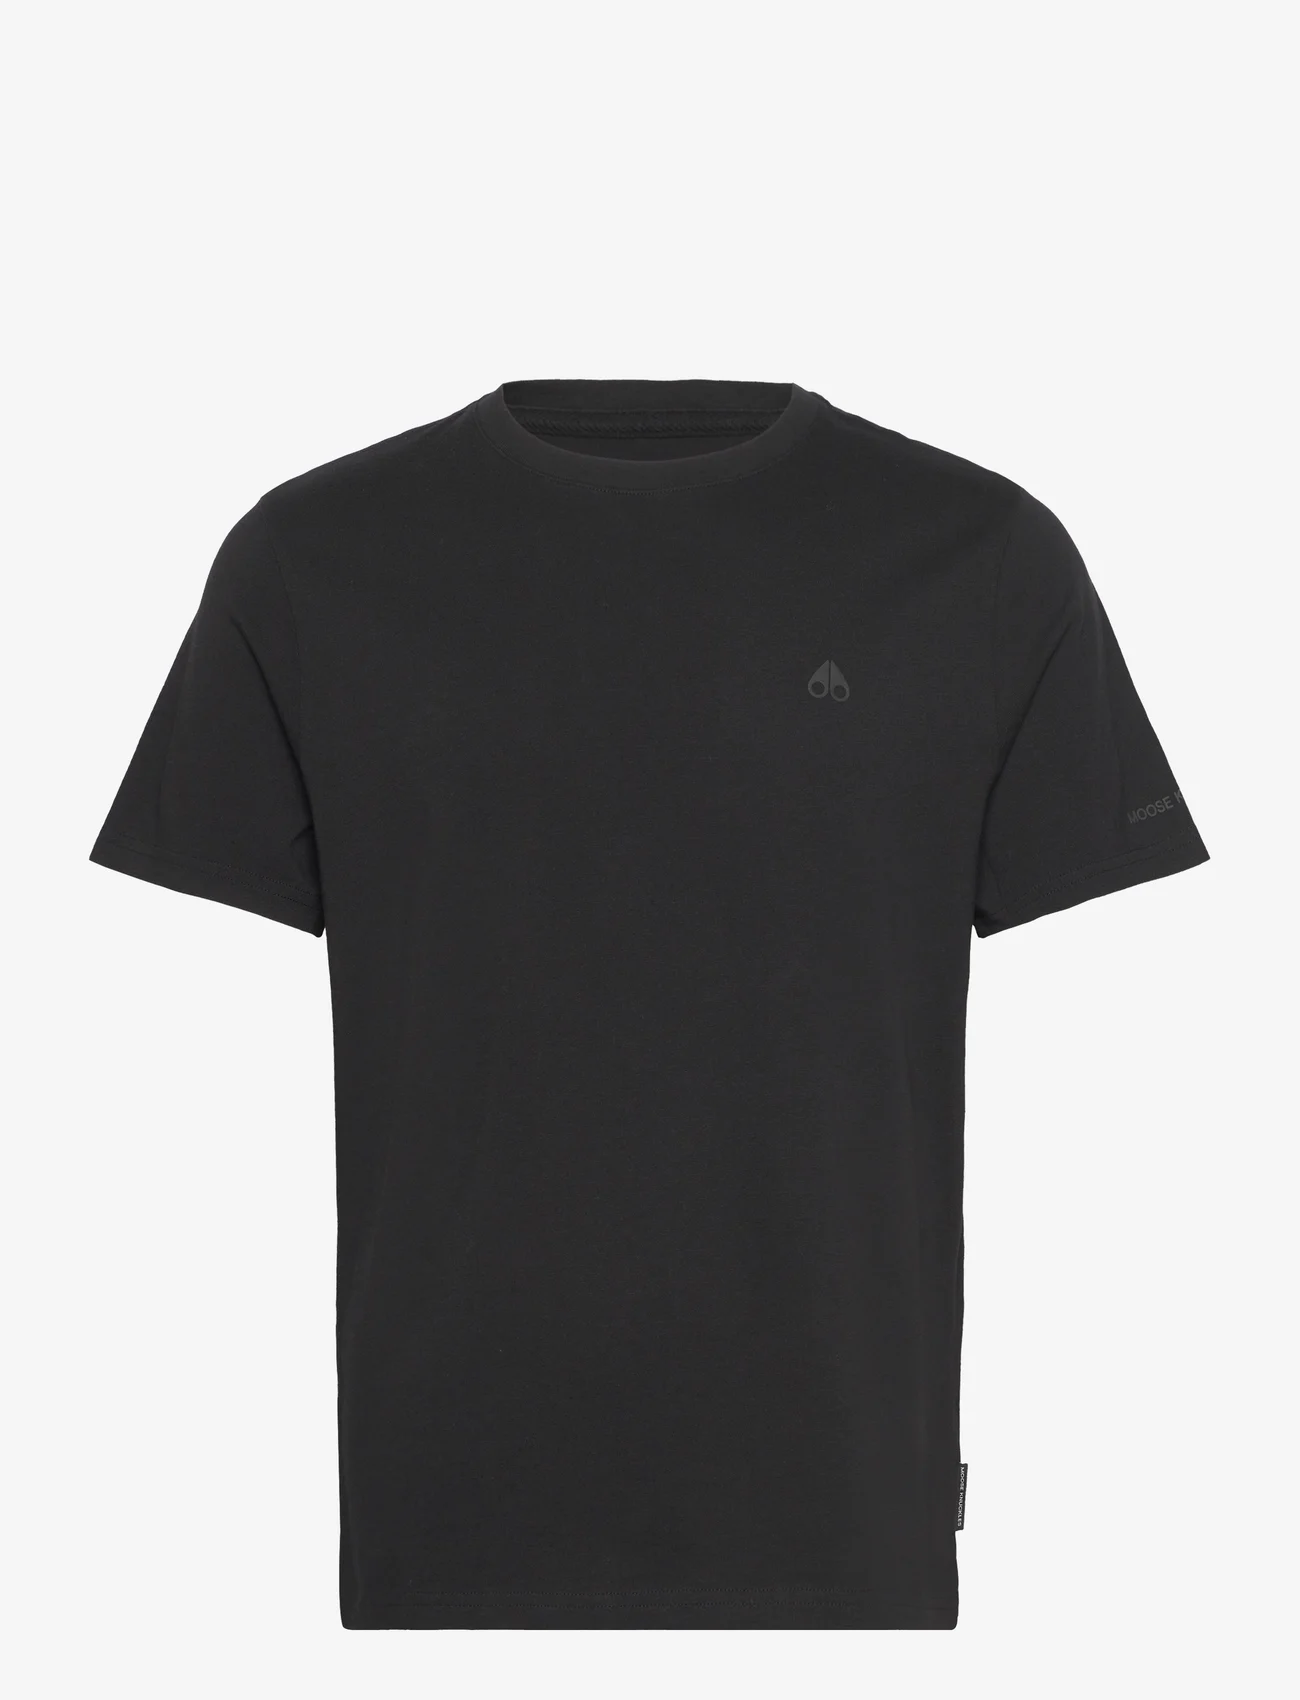 Moose Knuckles - SATELLITE TEE - kortärmade t-shirts - black - 0